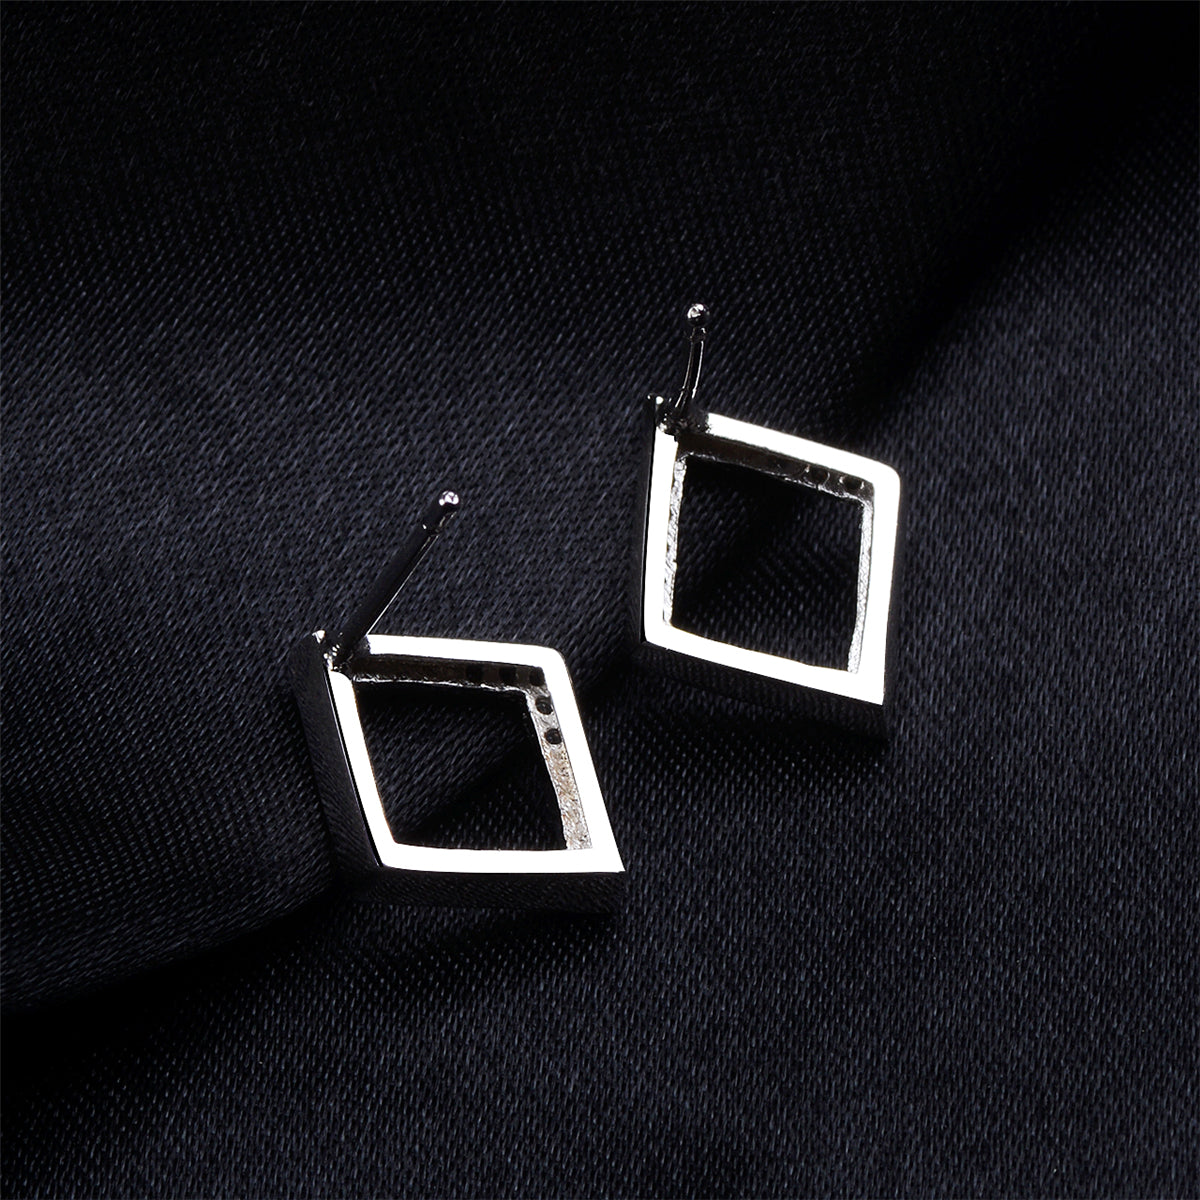 Cubic Zirconia & Silver-Plated Openwork Rhombus Stud Earrings